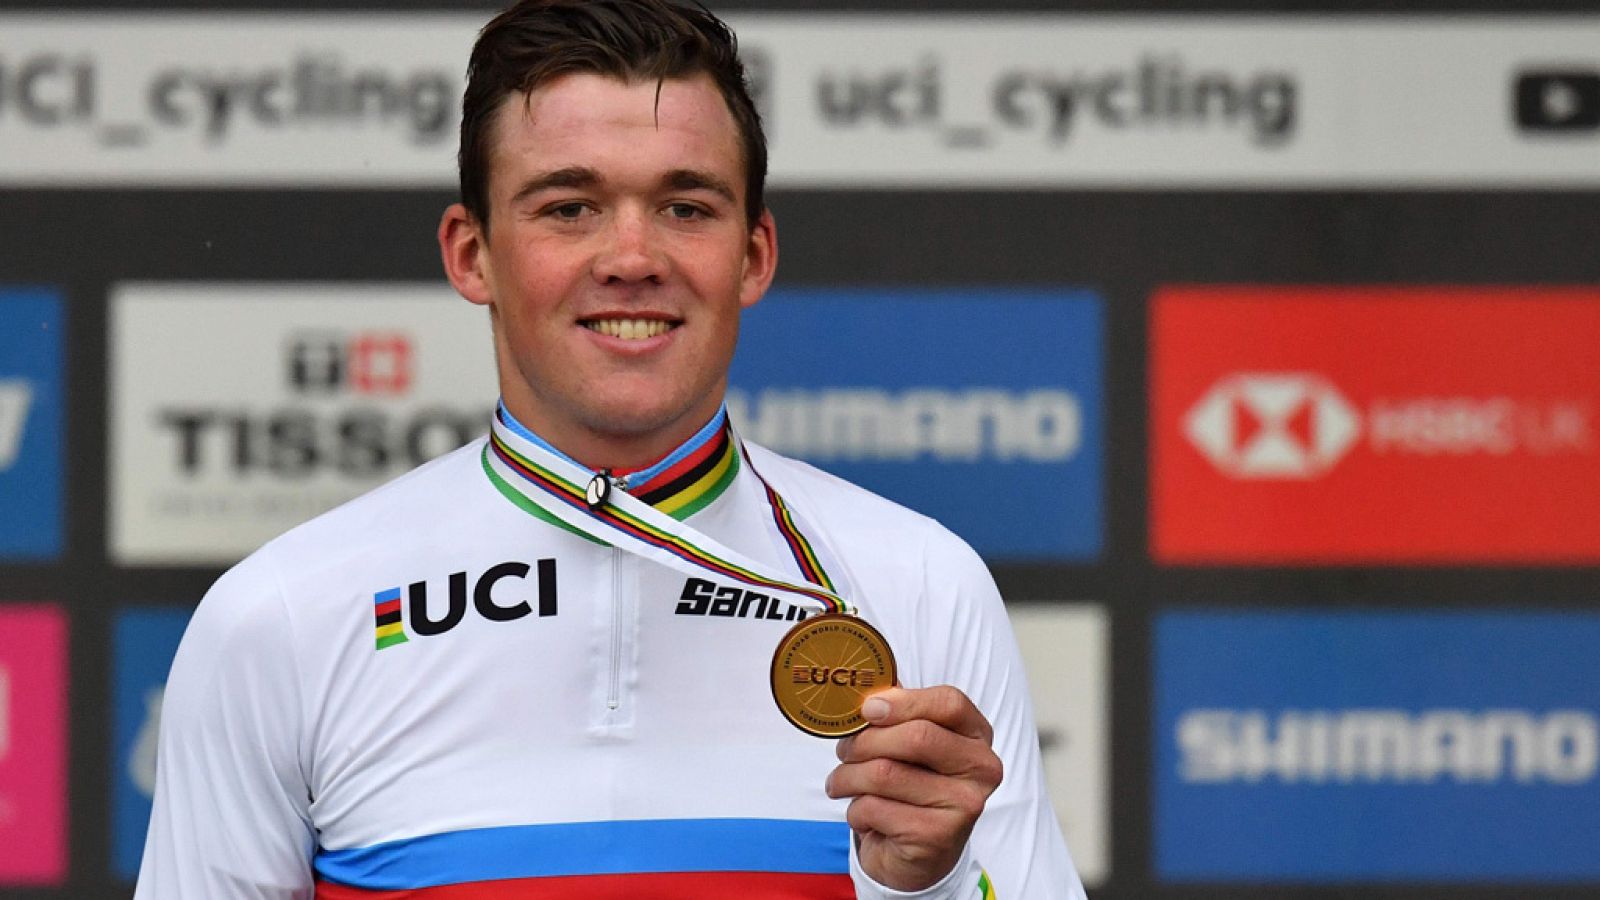 Mundial de ciclismo | El joven danés Mads Pedersen se enfunda el maillot arco iris en Yorkshire